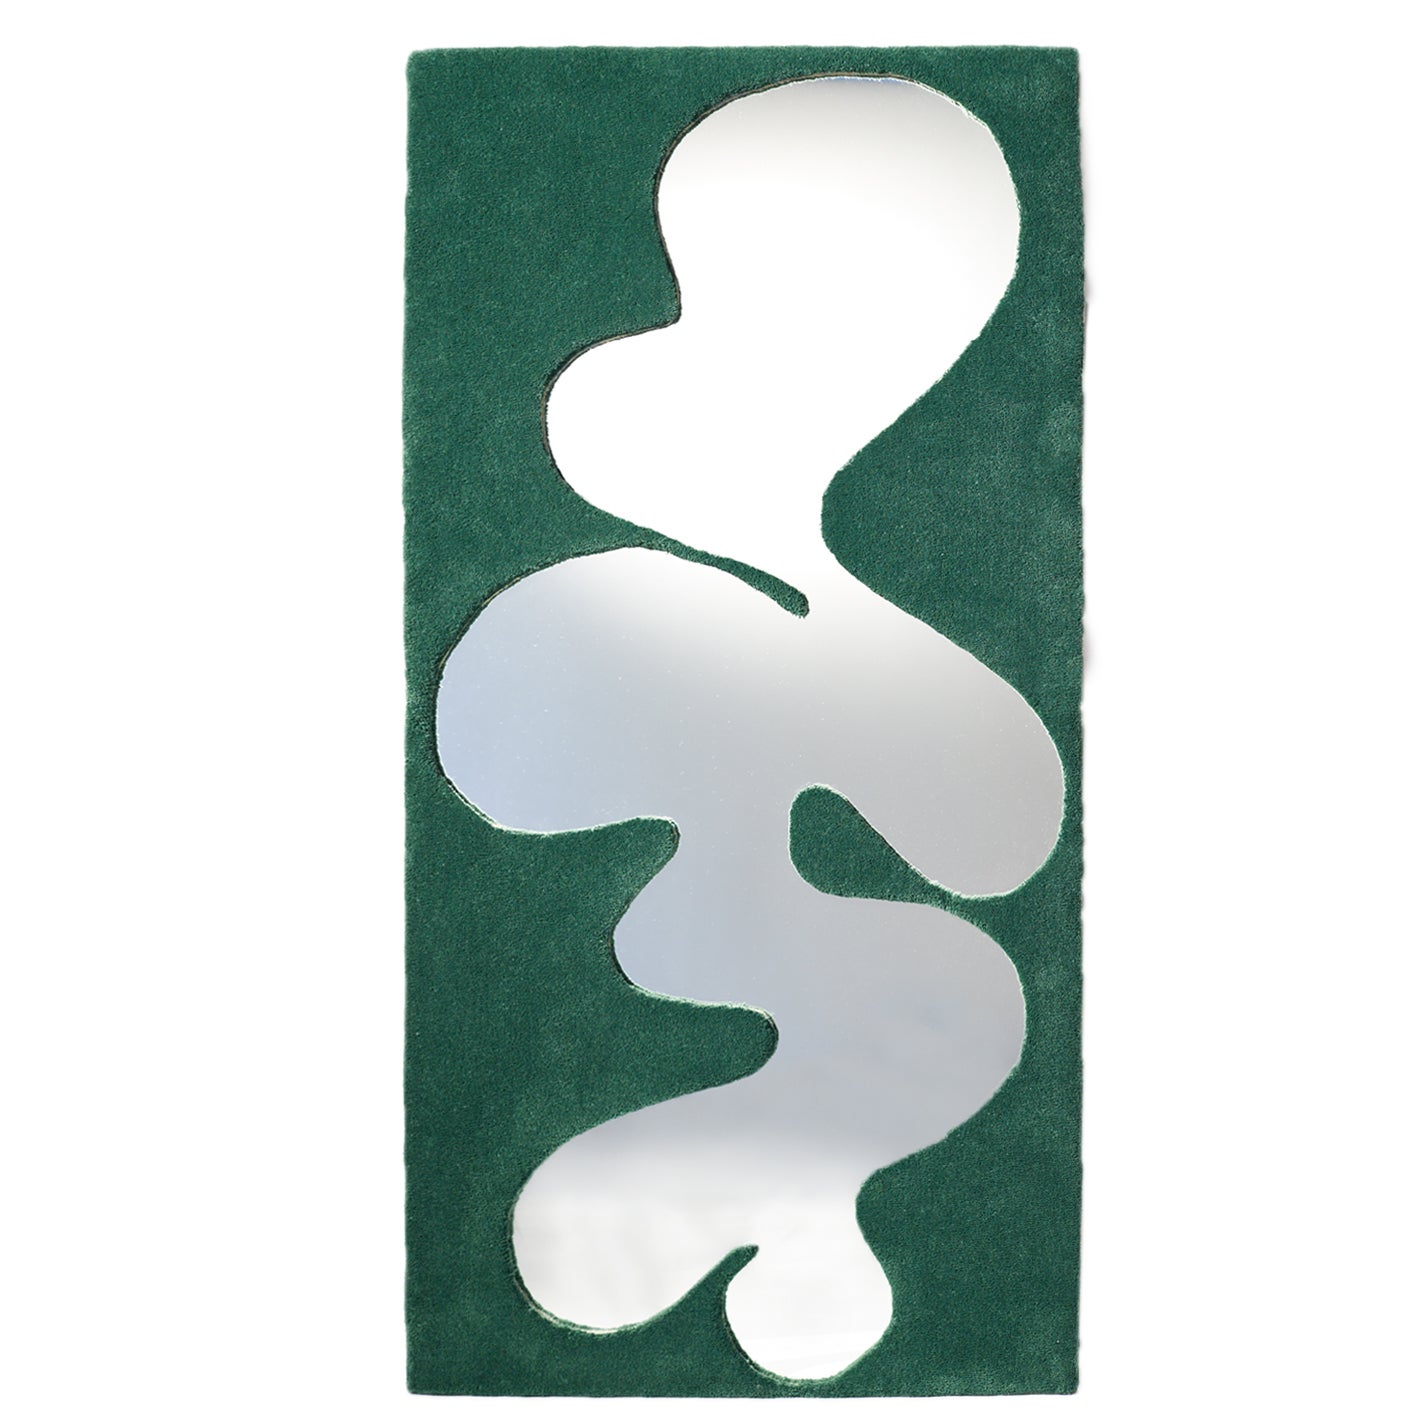 Contemporary Fiordo Spiegel, Rahmen aus 100% Wolle, smaragdgrün von Brera Studio